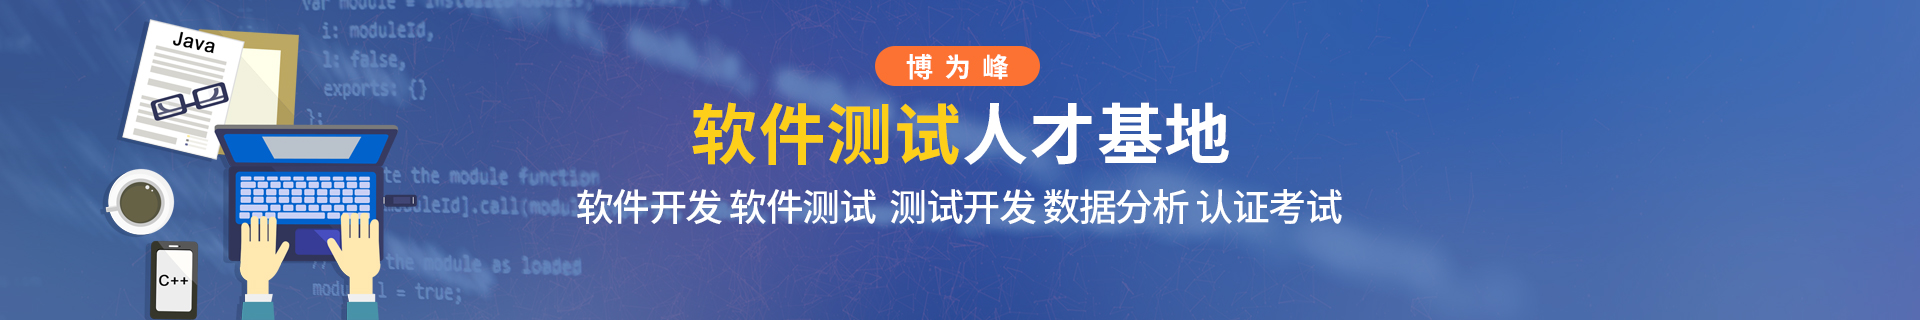 石家庄博为峰软件技术培训机构